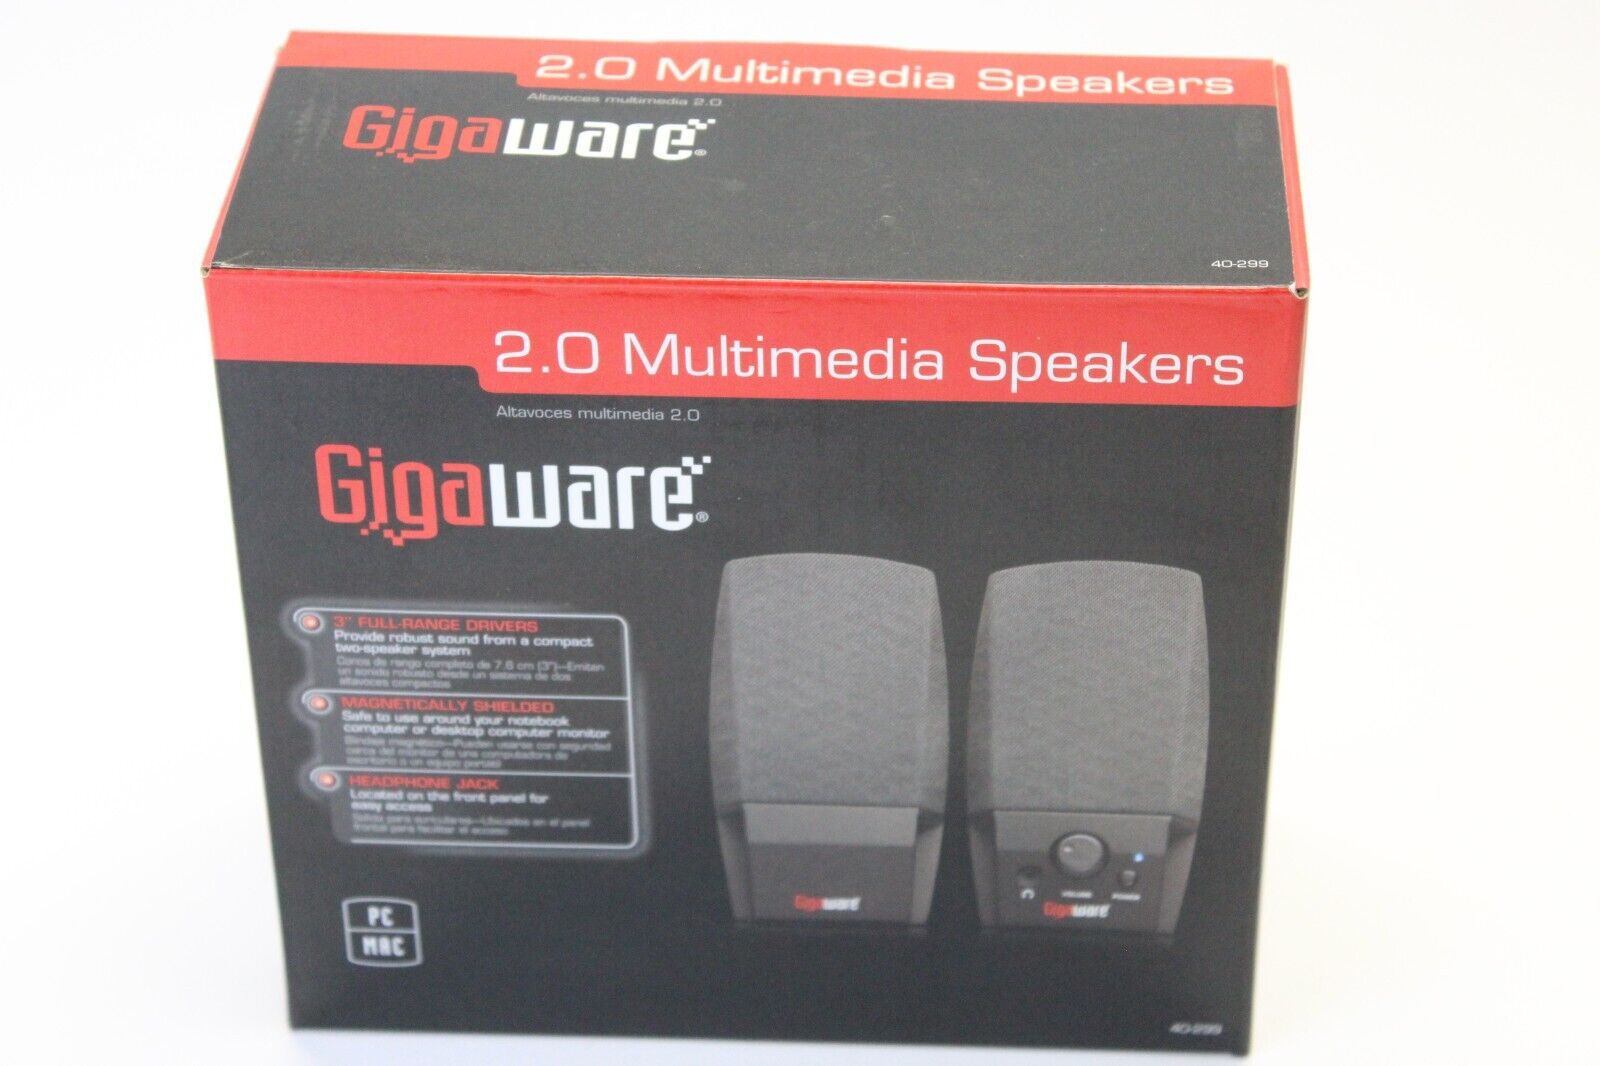 Gigaware 2.0 Multimedia Speakers Brand New in Box Model 4000299